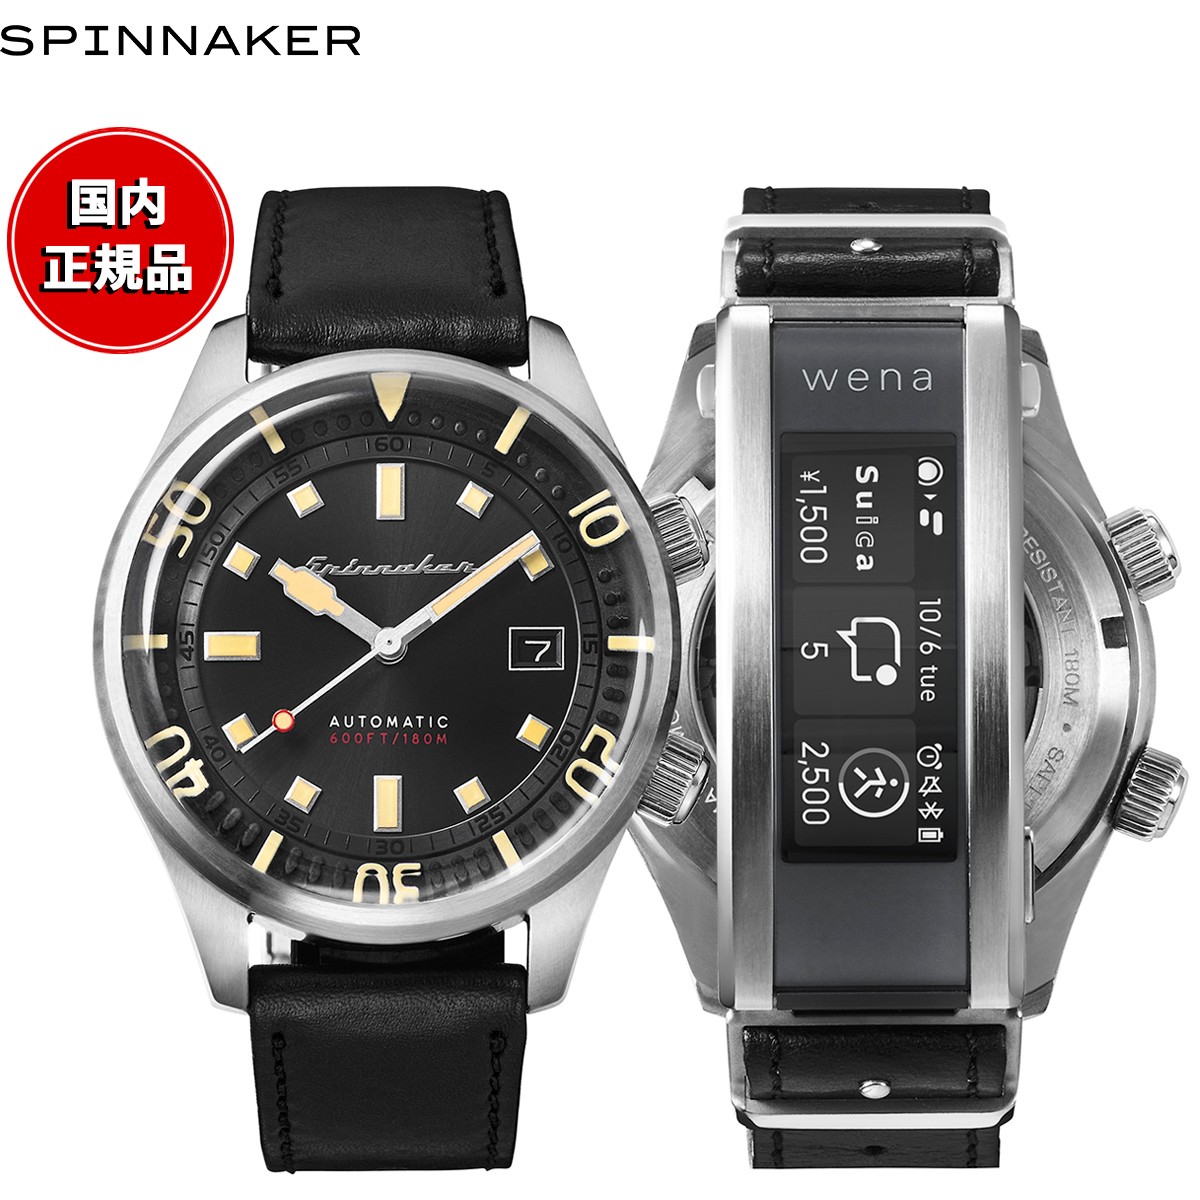 スピニカー SPINNAKER wena 3 ウェナ3 コラボ 日本限定モデル ブラッドナー BRADNER スマートウォッチ SP-5062-WN-01 腕時計 メンズ 自動巻き